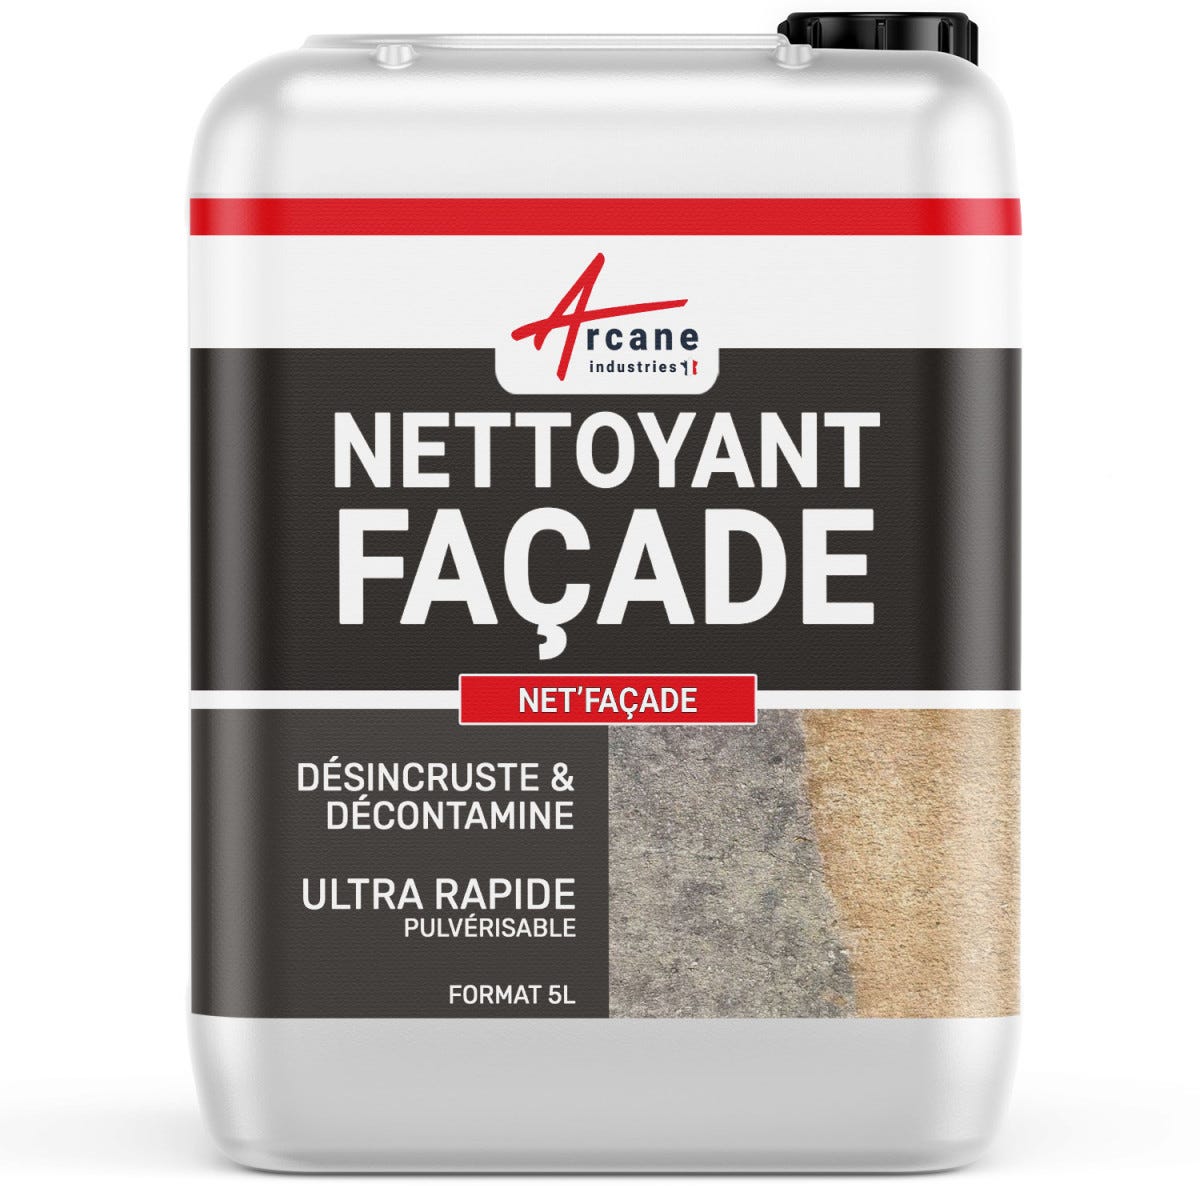 Nettoyant facade produit professionnel rapide crépi enduit - 5 L - - ARCANE INDUSTRIES 0